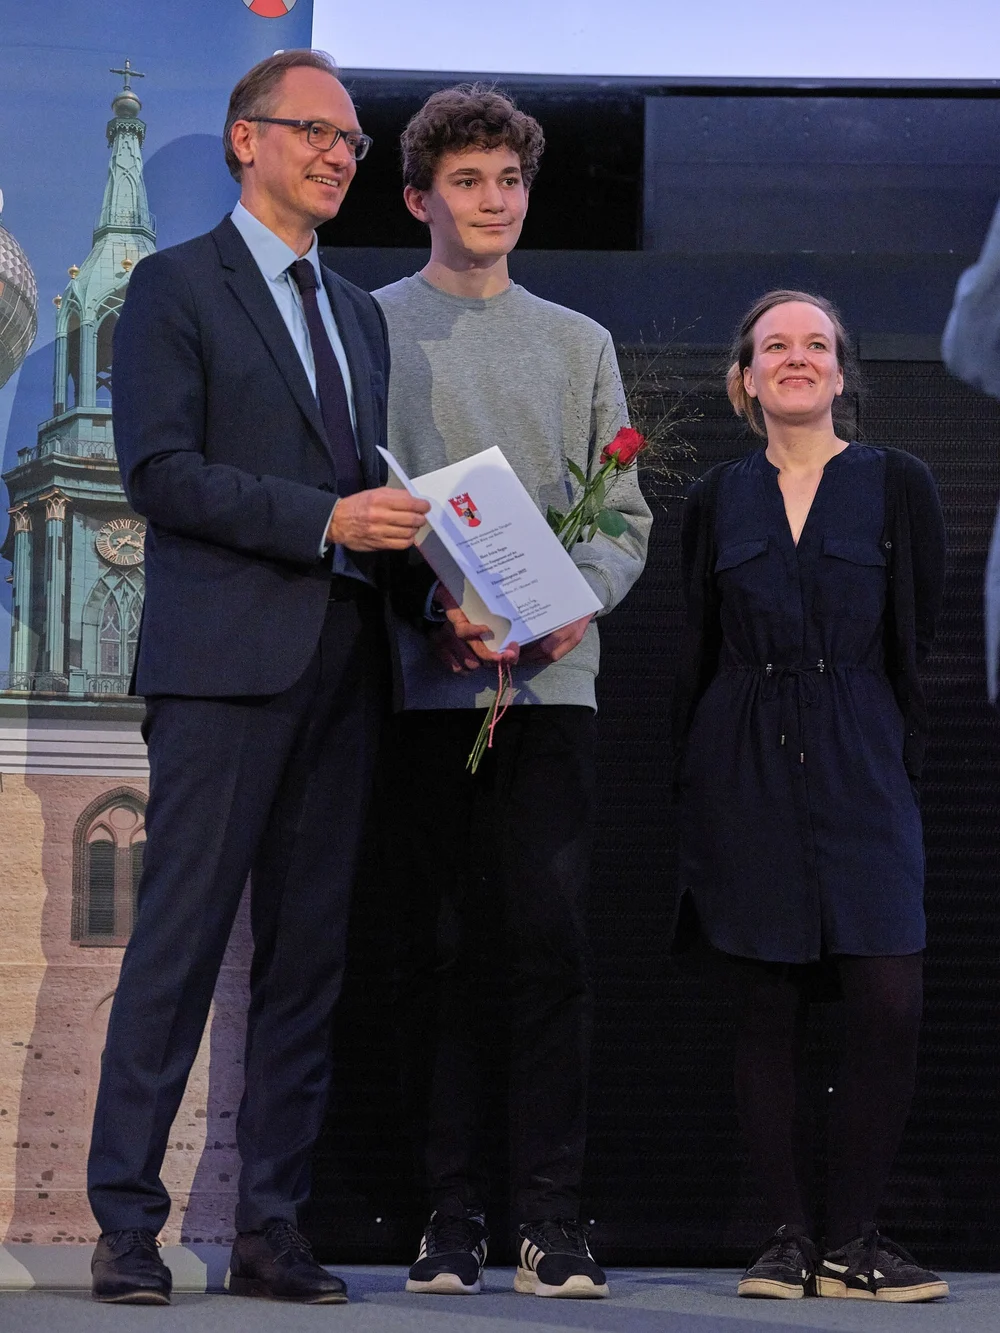 Ivica erhält den Ehrenamtspreis! Wir sind stolz auf ihn!